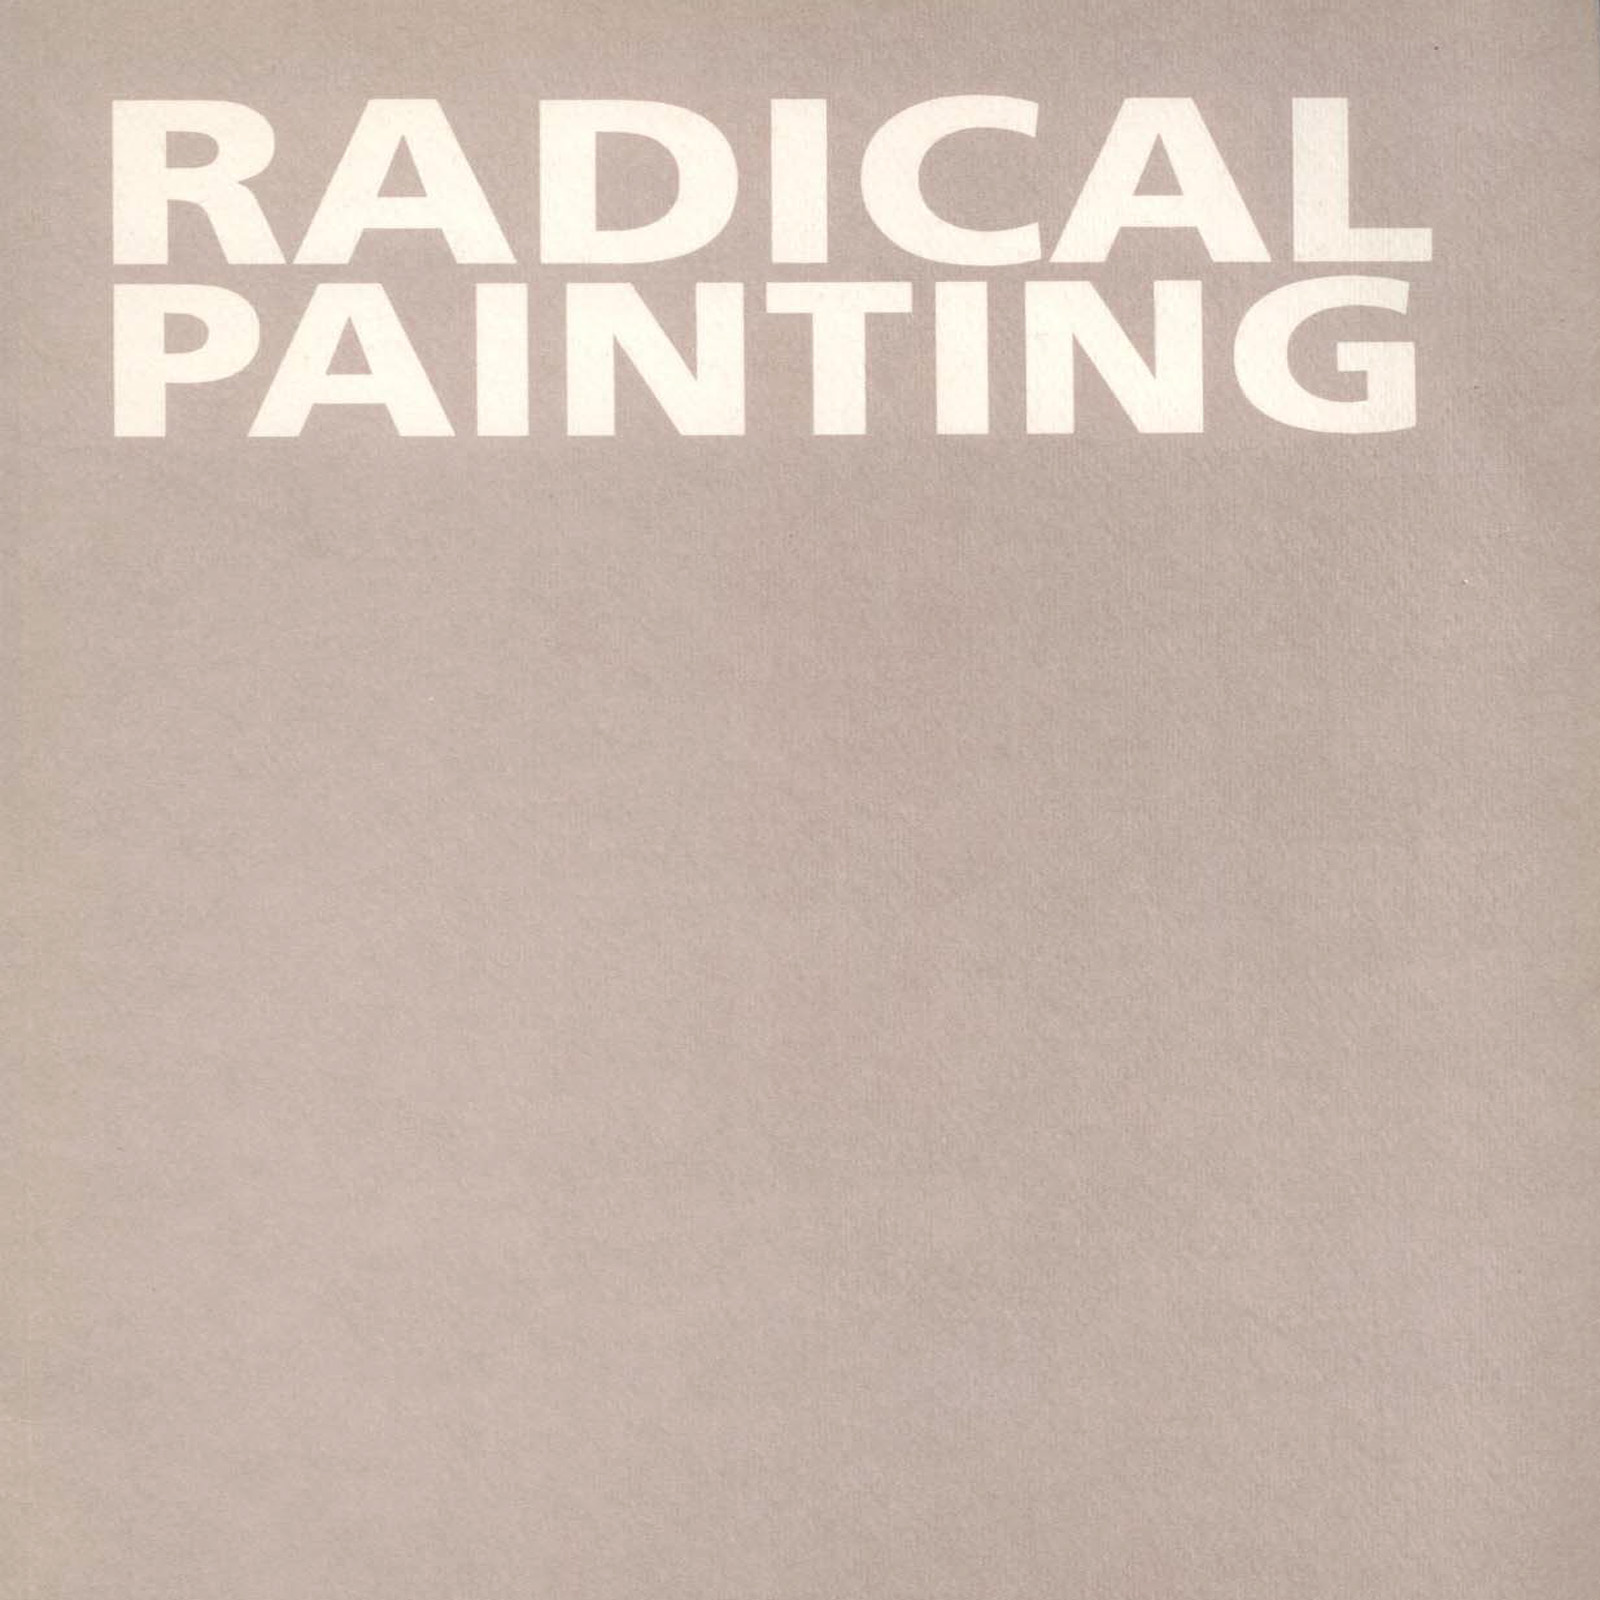 Radical Paintings 1984.jpg